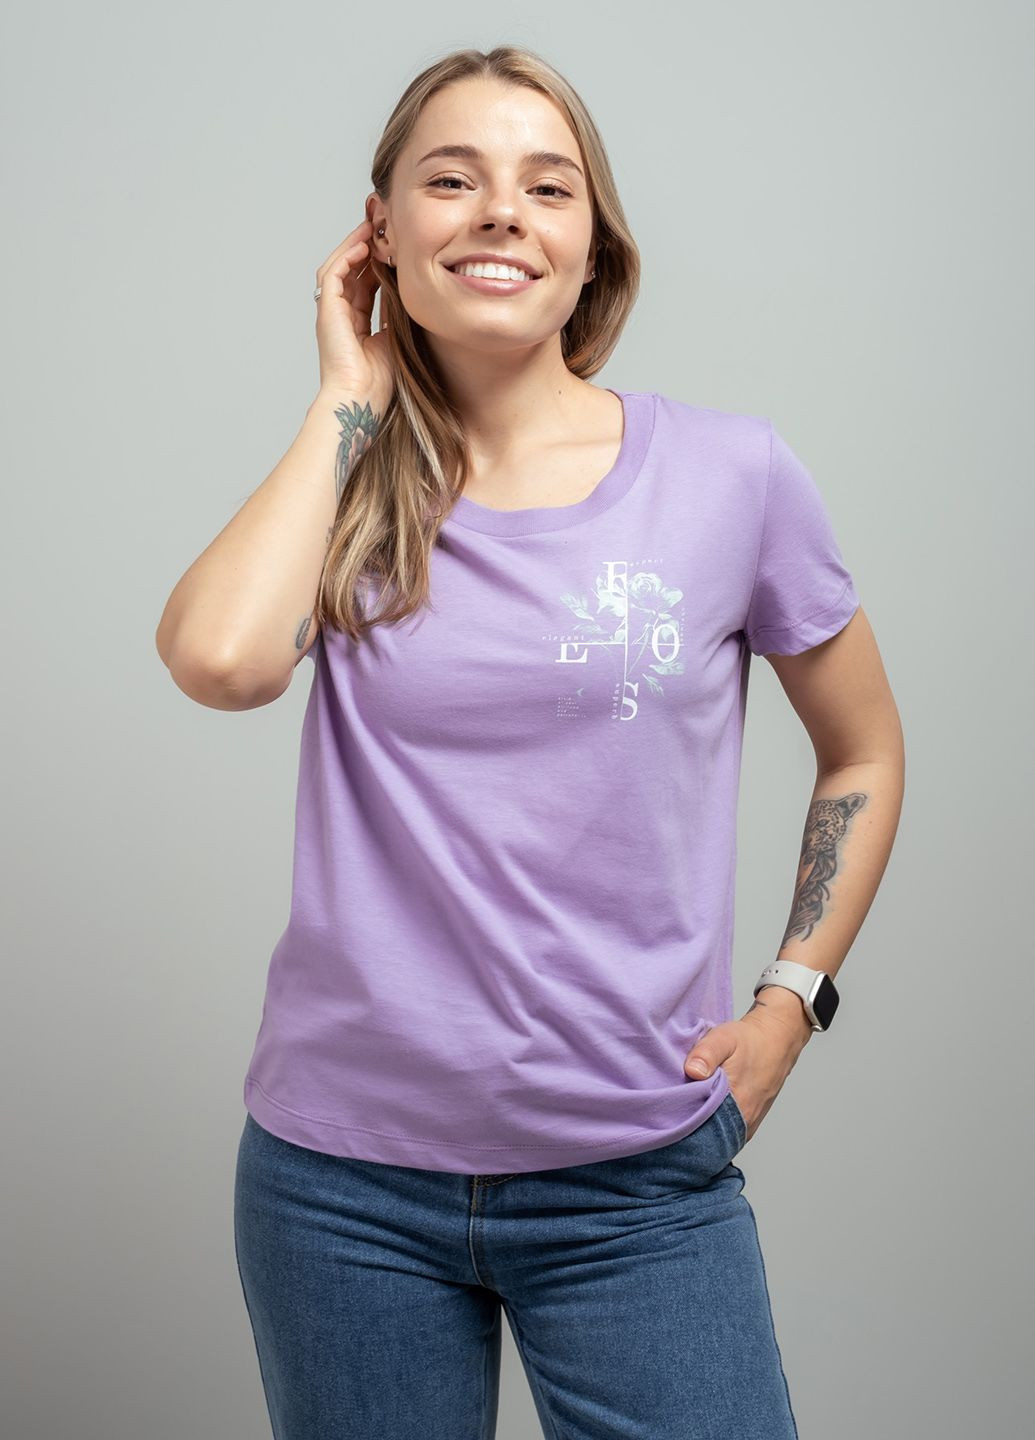 Фиолетовая летняя женская футболка с принтом 103242 Power